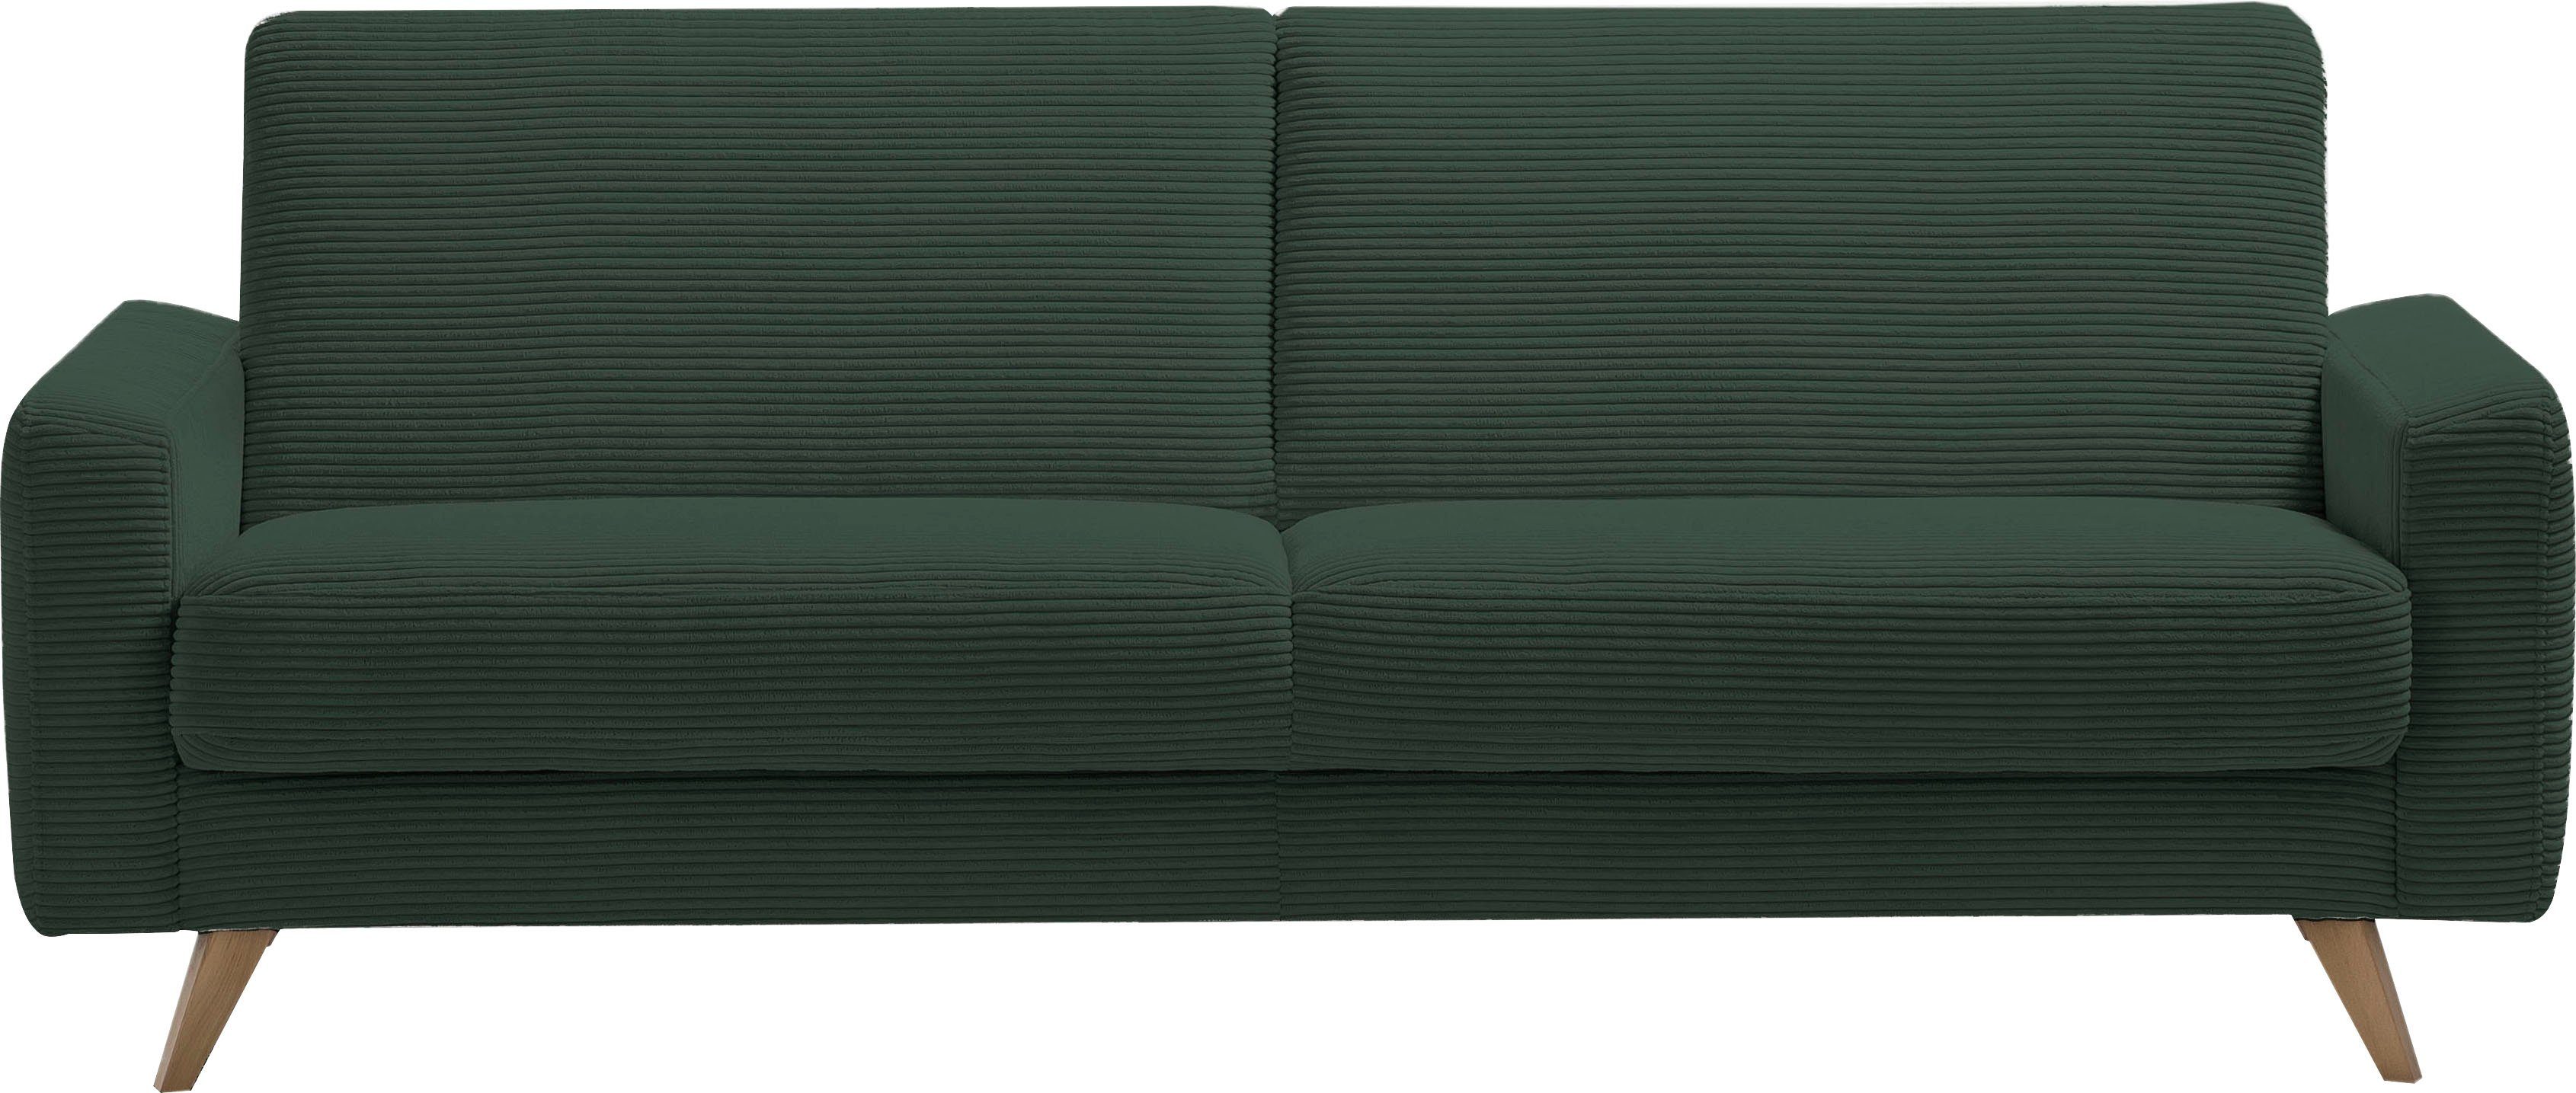 Extrem beliebt in Japan exxpo - Bettfunktion Bettkasten Samso, 3-Sitzer Inklusive sofa pine fashion und